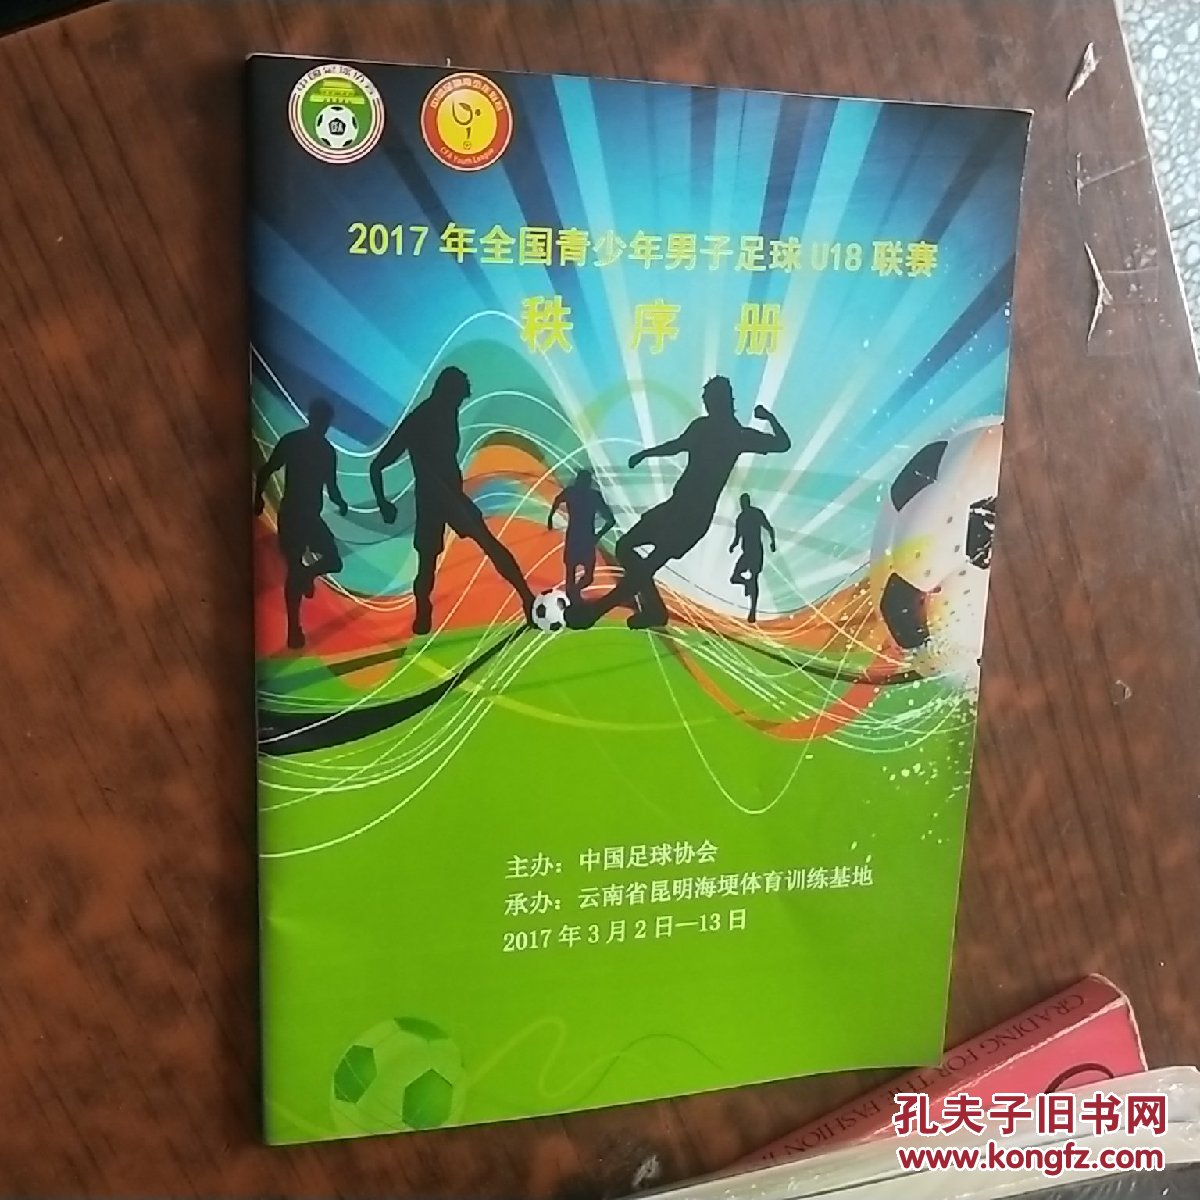 2017年全国青少年男子足球U18联赛秩序册